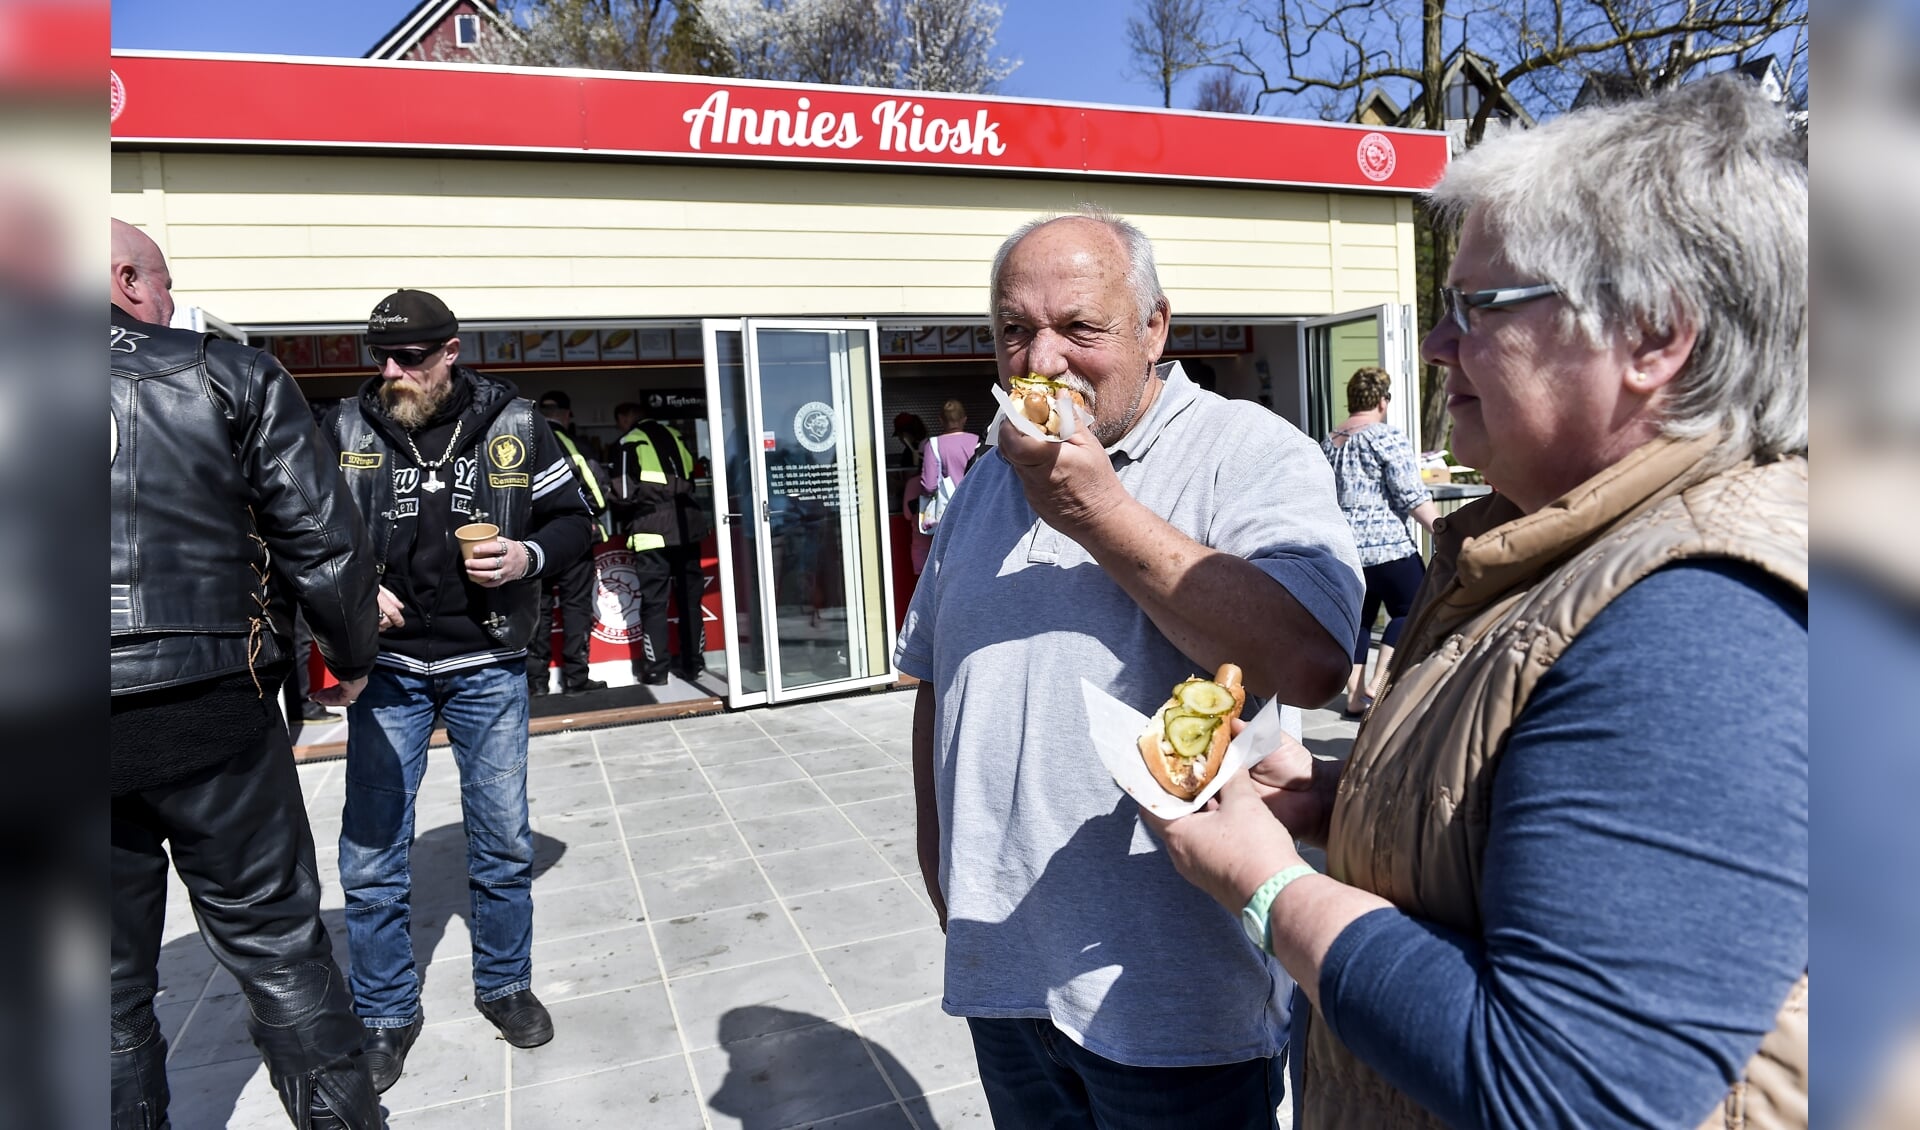 Für viele Urlauber der erste Stopp in Dänemark: Annies Kiosk an der Flensburger Förde. Foto: Claus Thorsted